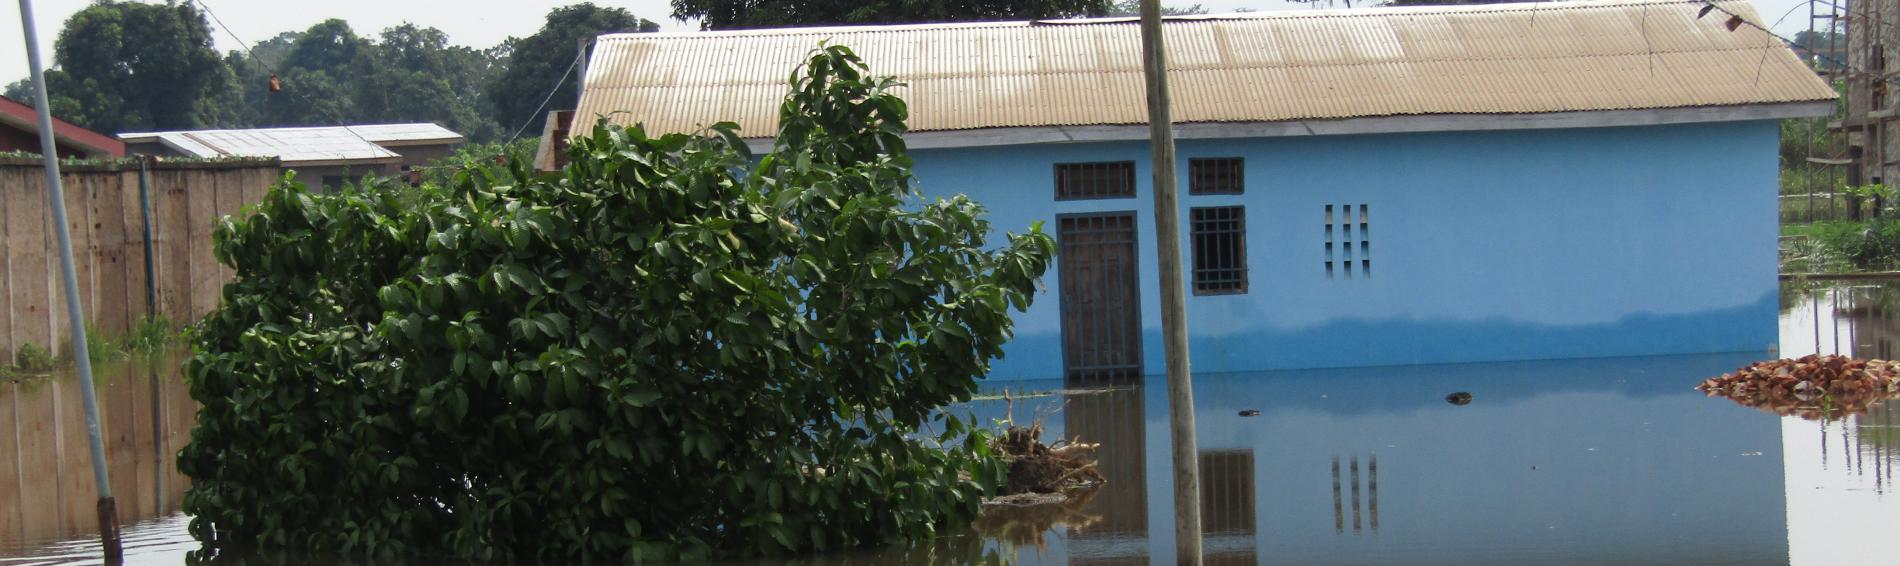 Überflutung in der Zentralafrikanischen Republik